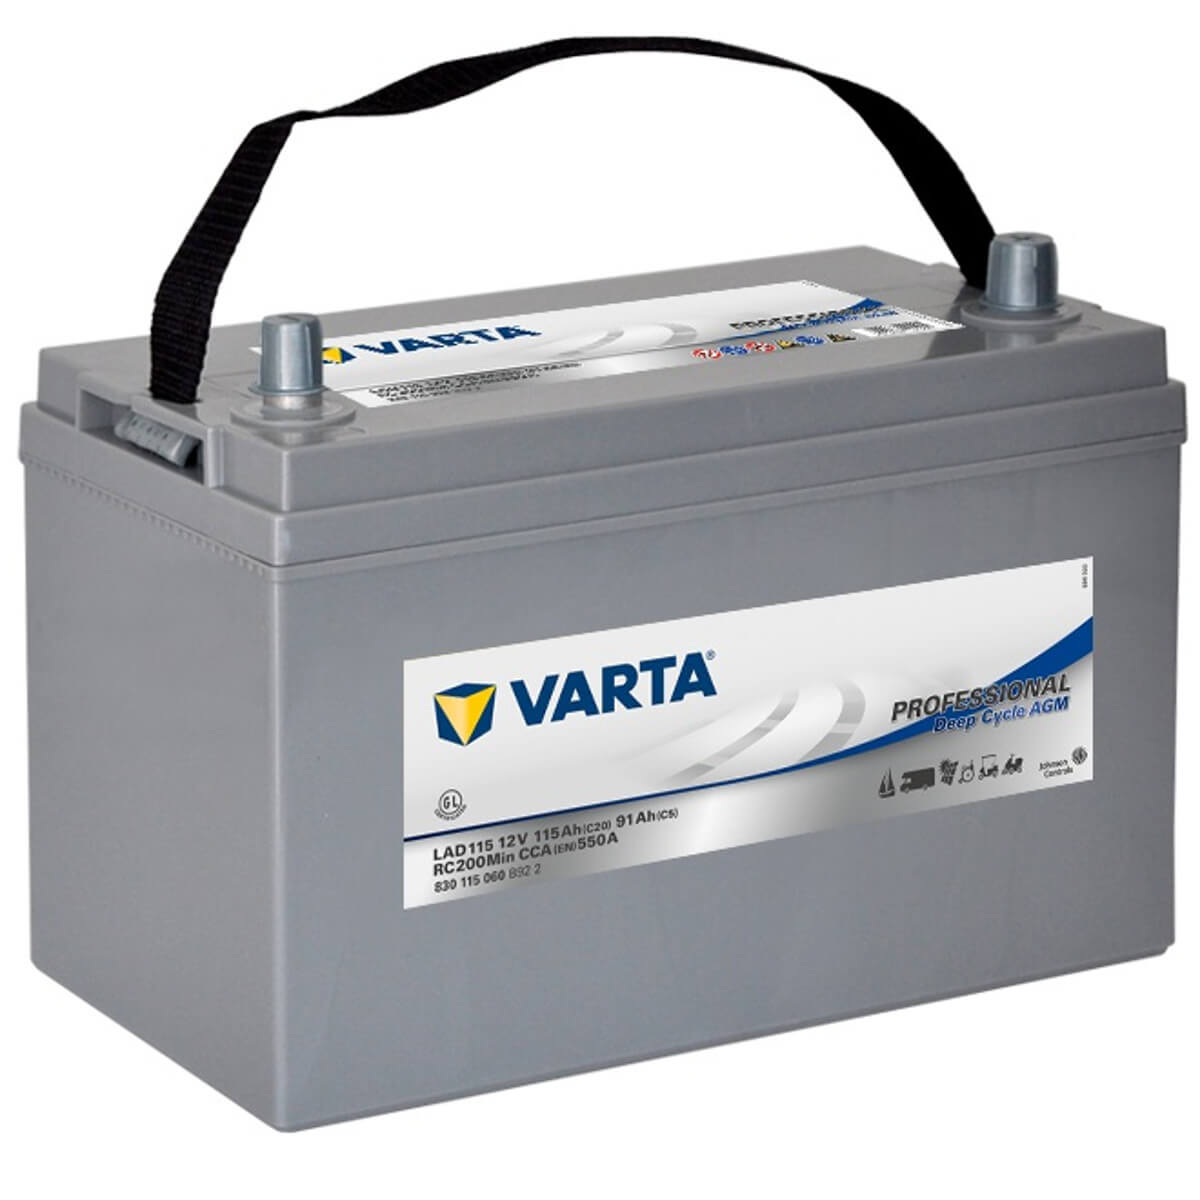 Varta LAD115 Professional DC AGM 12V 115Ah 600A/EN